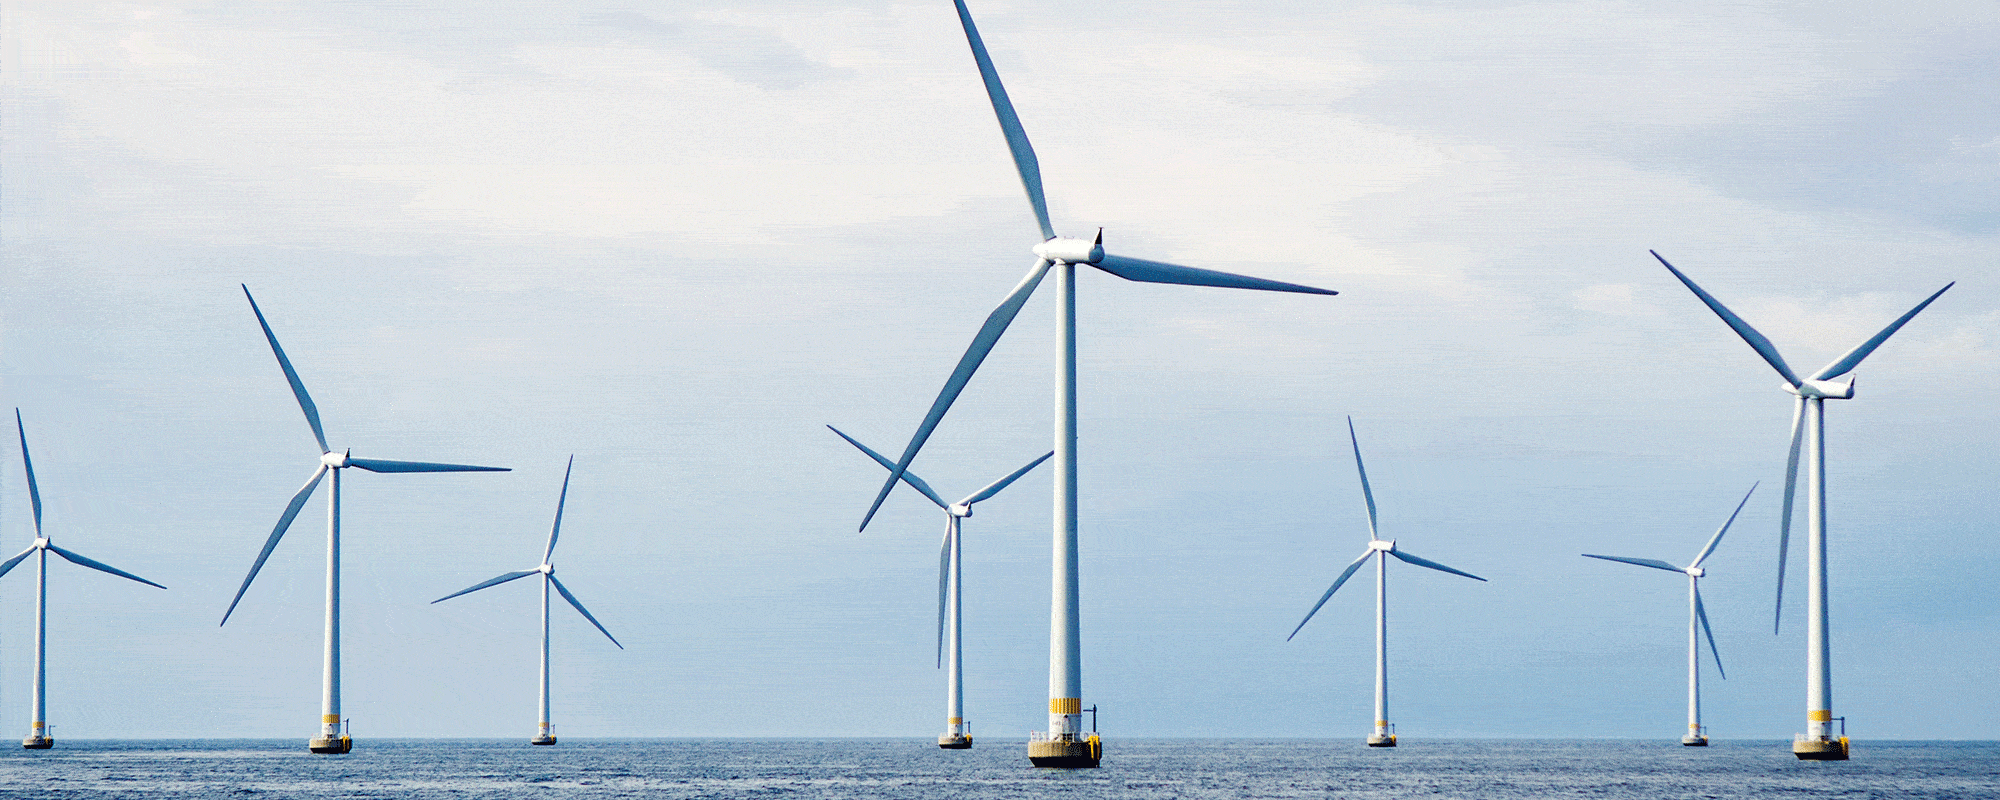 Wind Turbines on the Sea